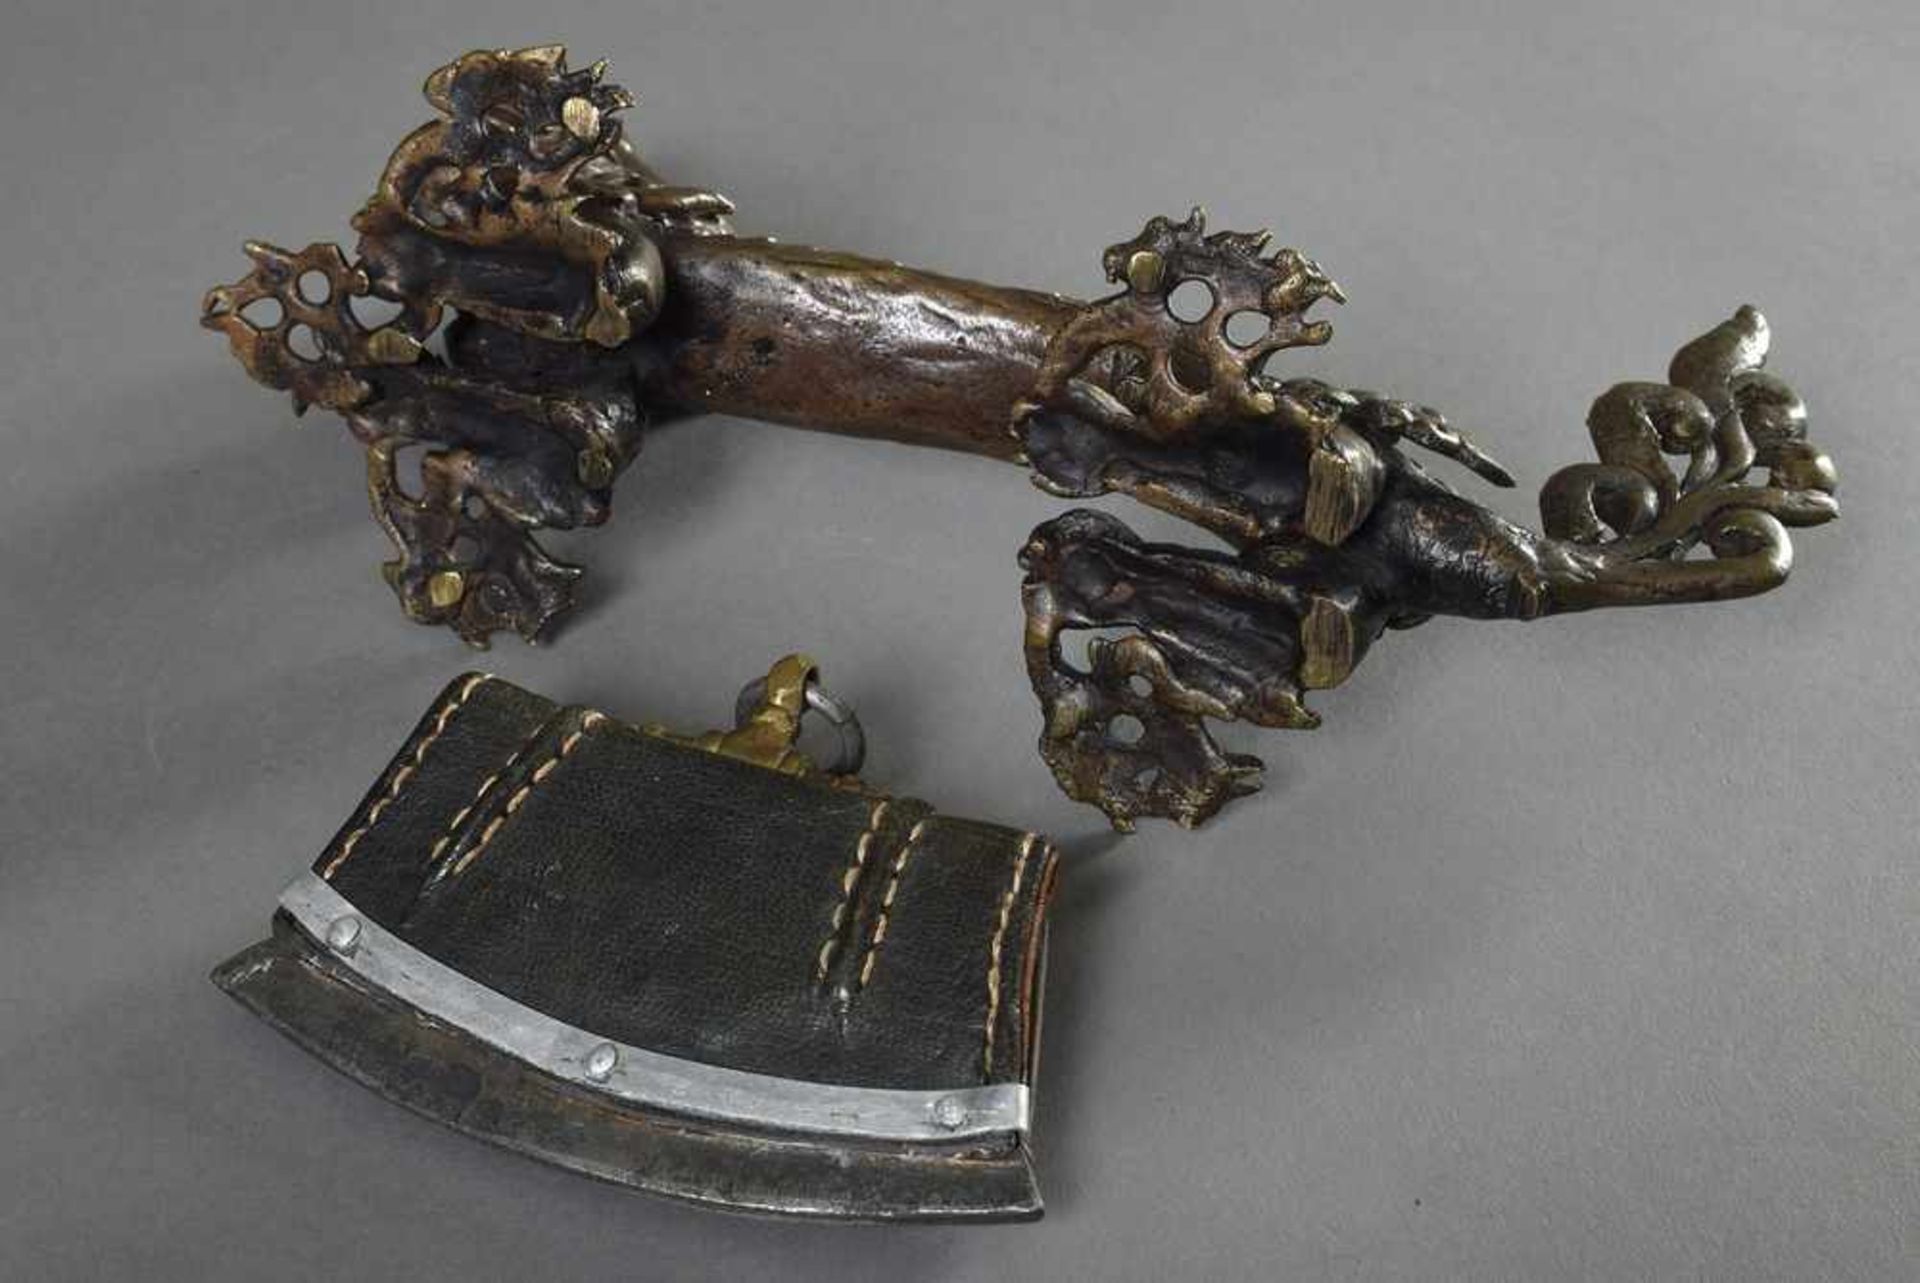 2 Diverse Teile tibetisches Feuerzeug mit floralen Beschlägen und Türbeschlag "Drache", Metall, - Bild 2 aus 5